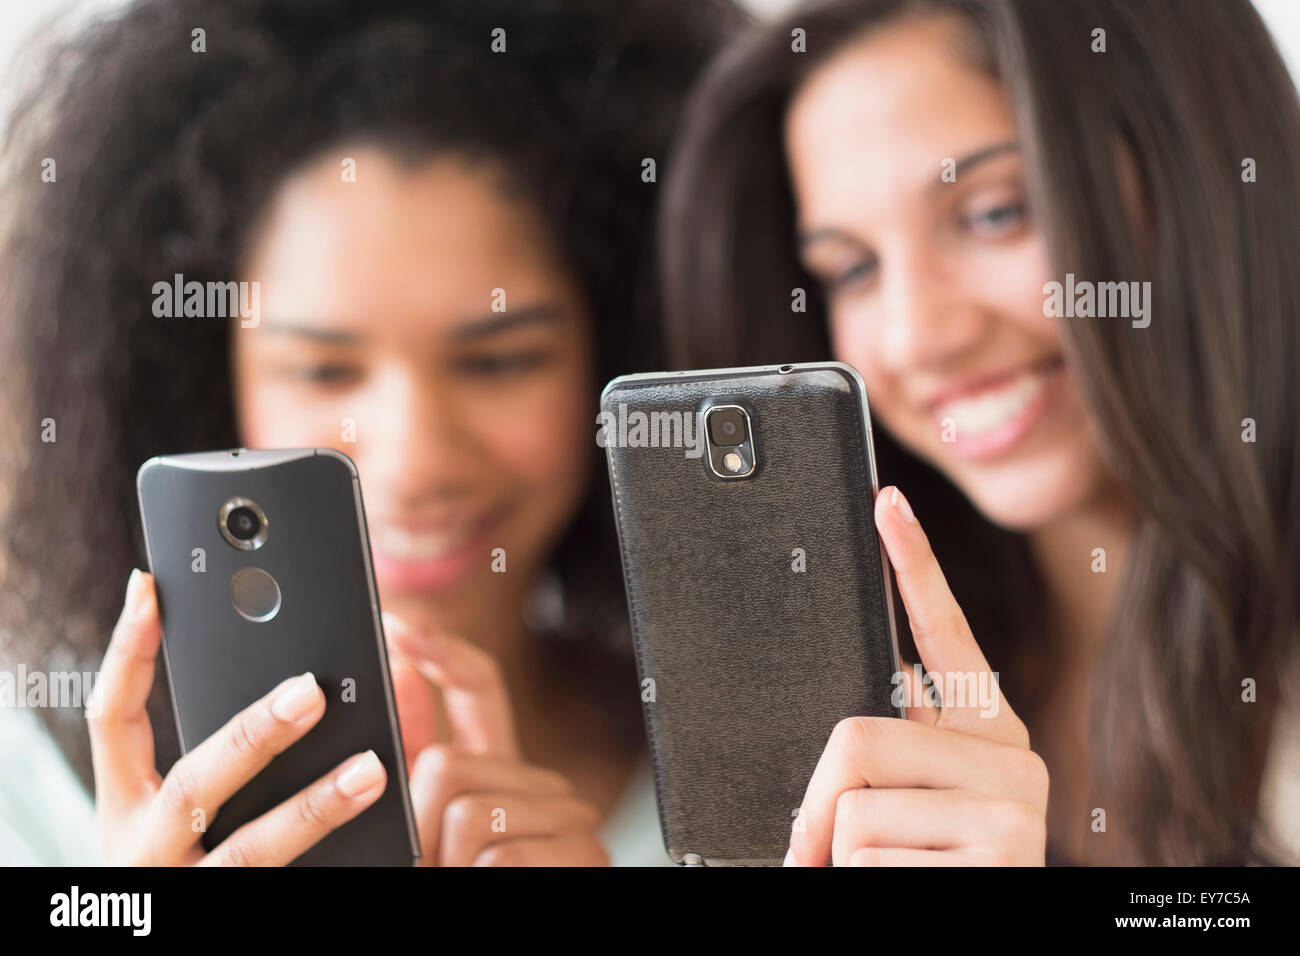 Teenage girls (14-15, 16-17) using smart phones Stock Photo